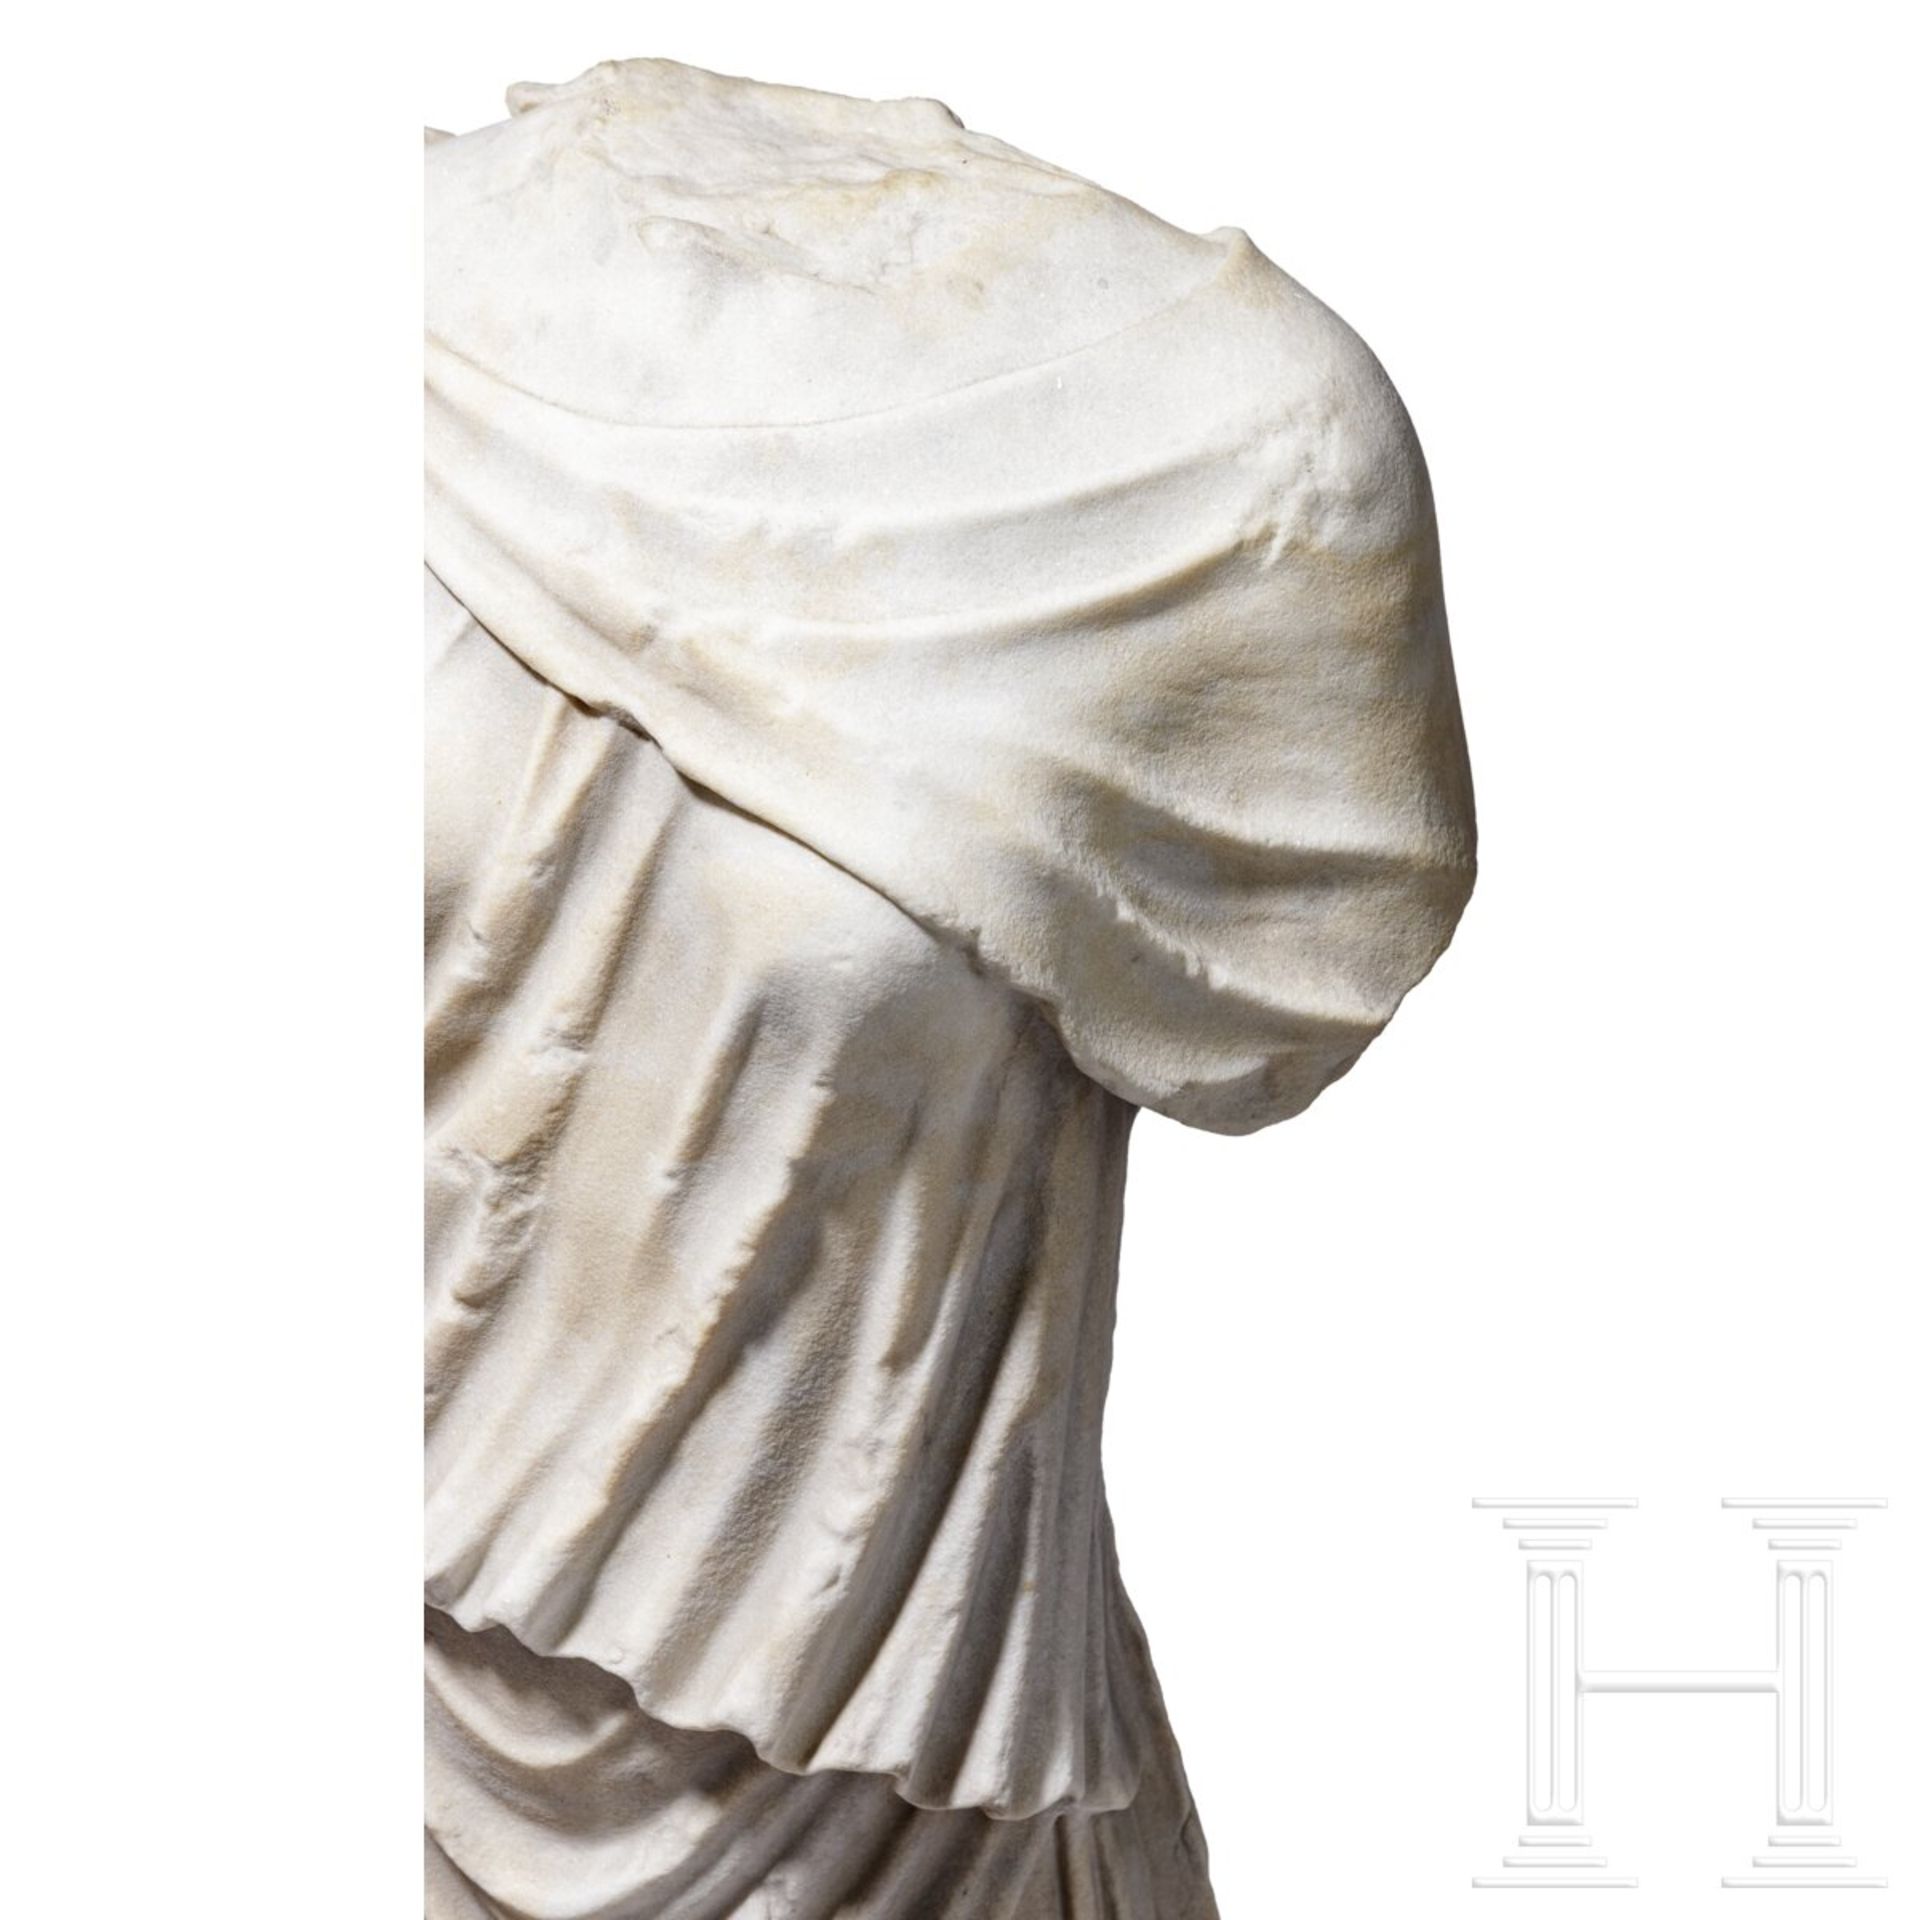 Klassizistischer Marmortorso nach dem Vorbild einer antiken Artemis-Statue, um 1800 - frühes 19. Jhd - Bild 6 aus 7